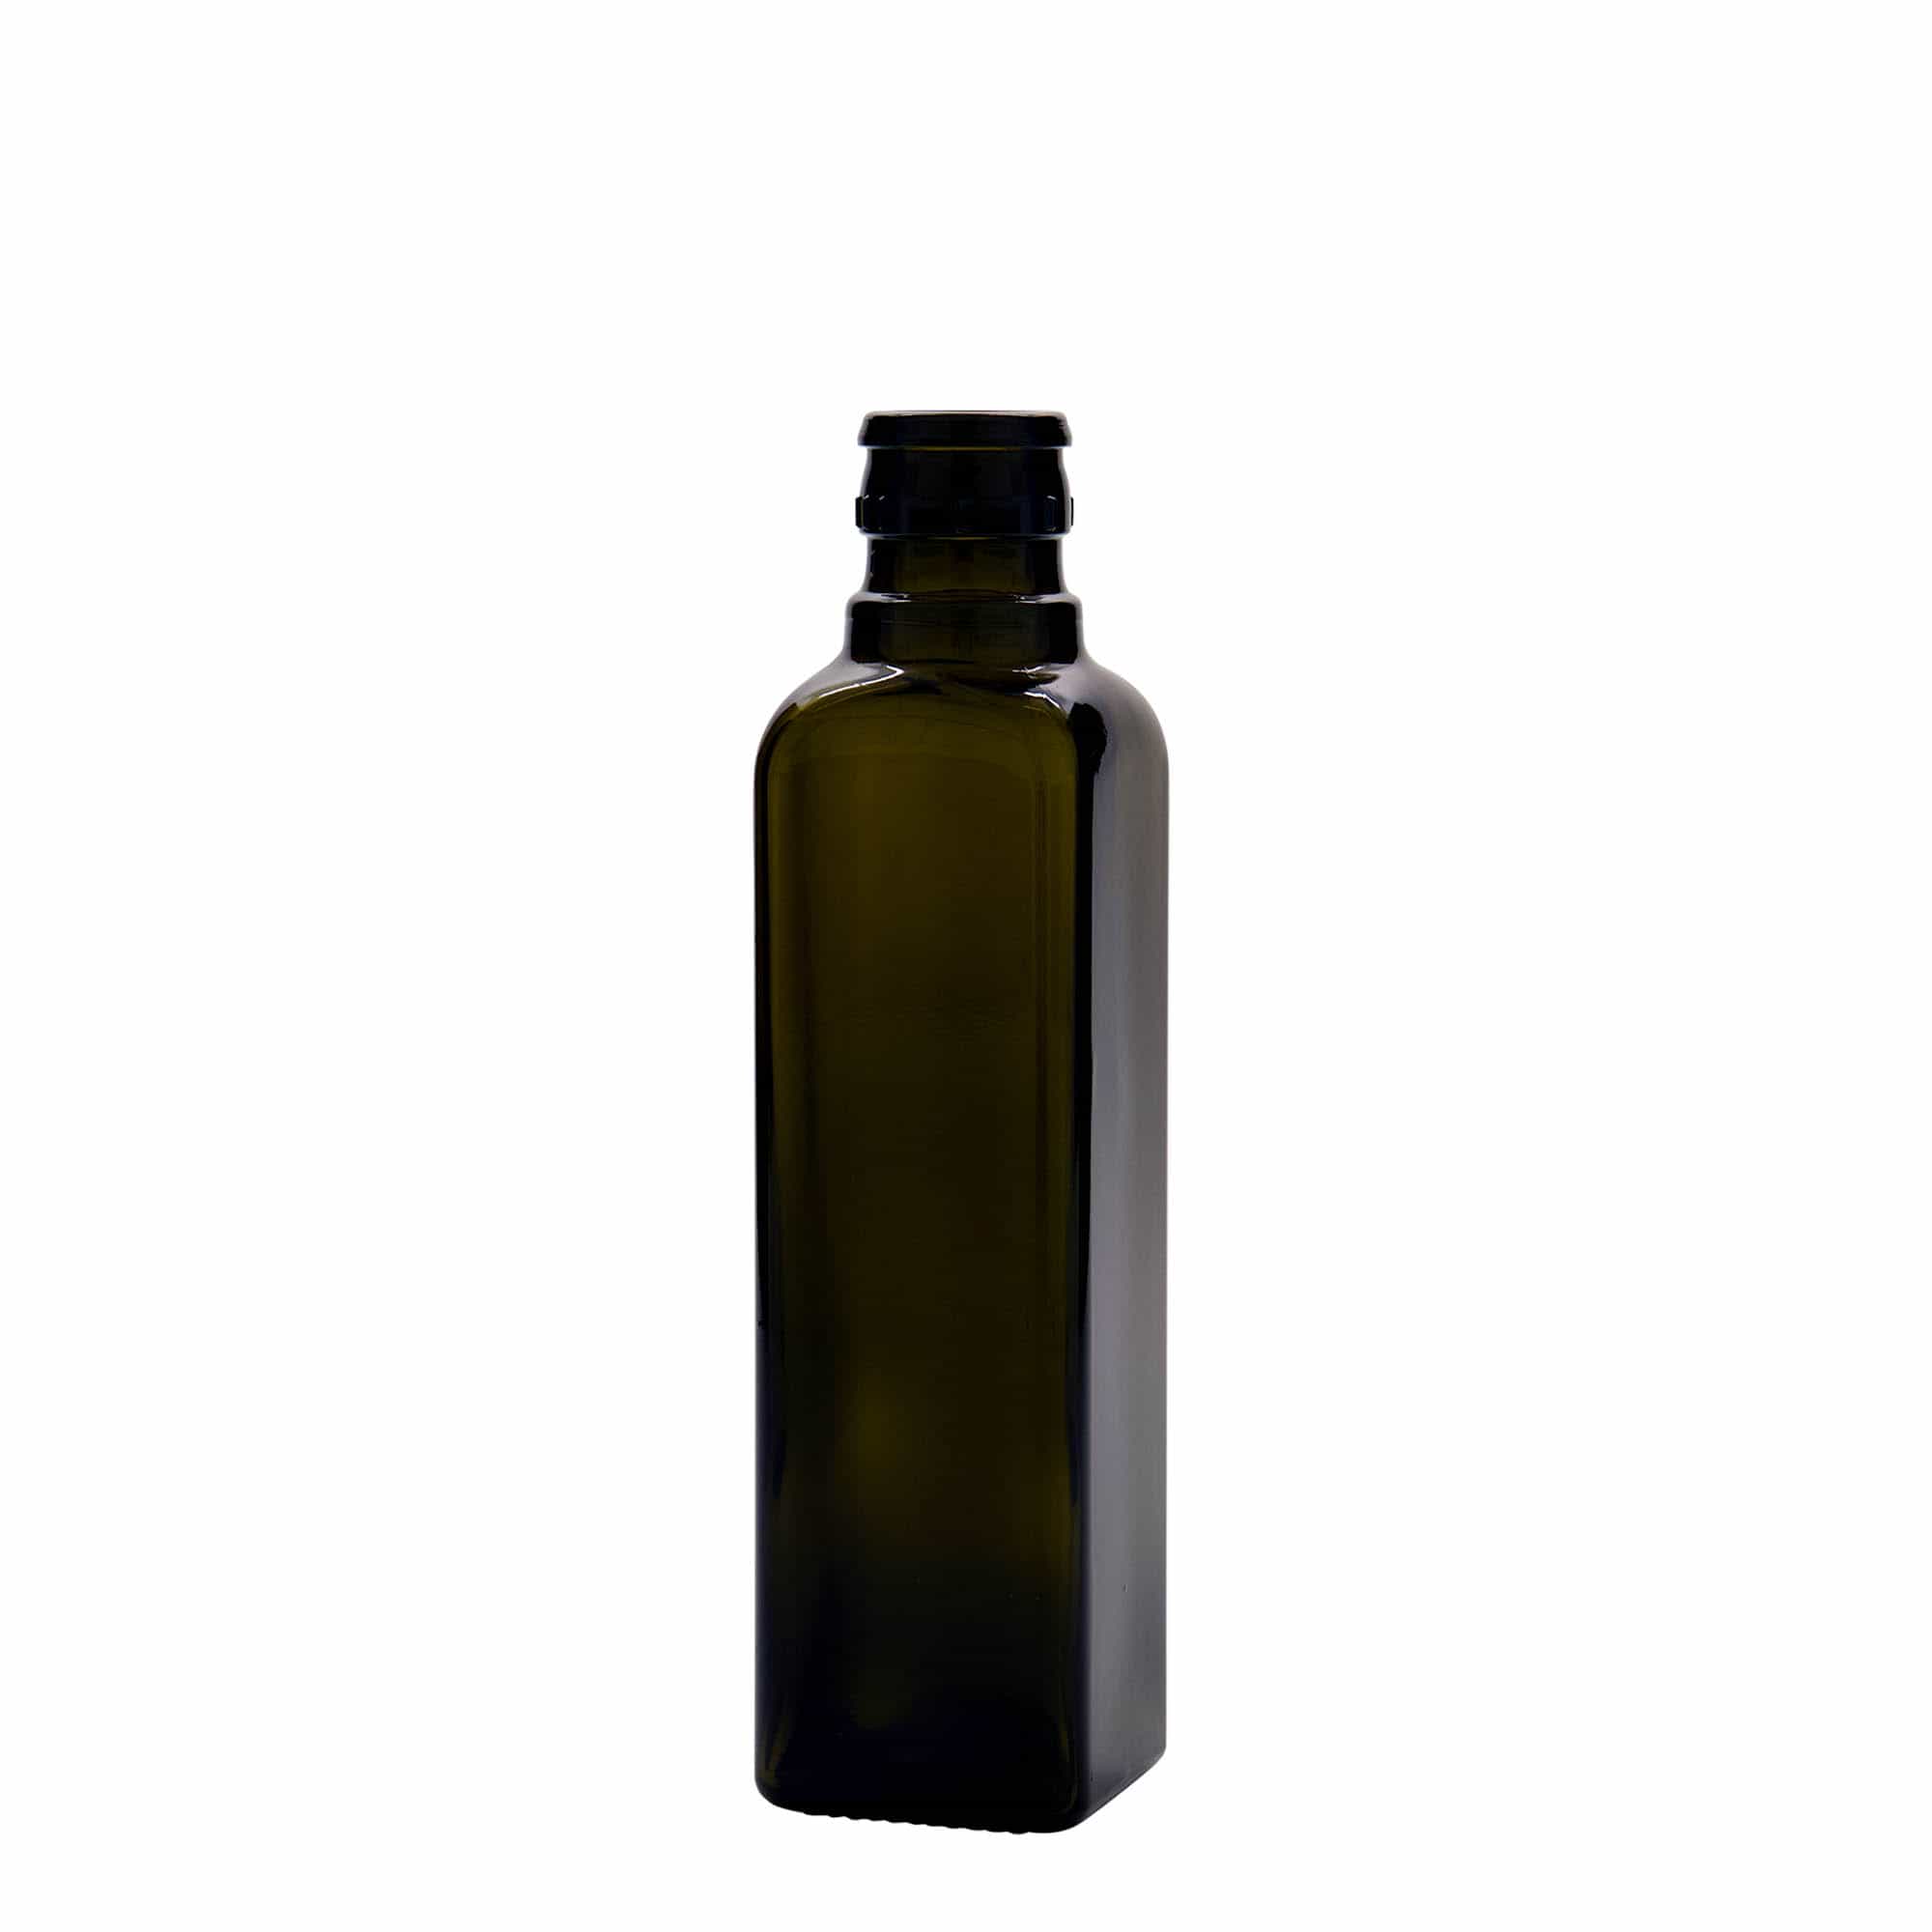 250 ml butelka na ocet/olej 'Quadra', szkło, kwadratowa, kolor zielony antyczny, zamknięcie: DOP